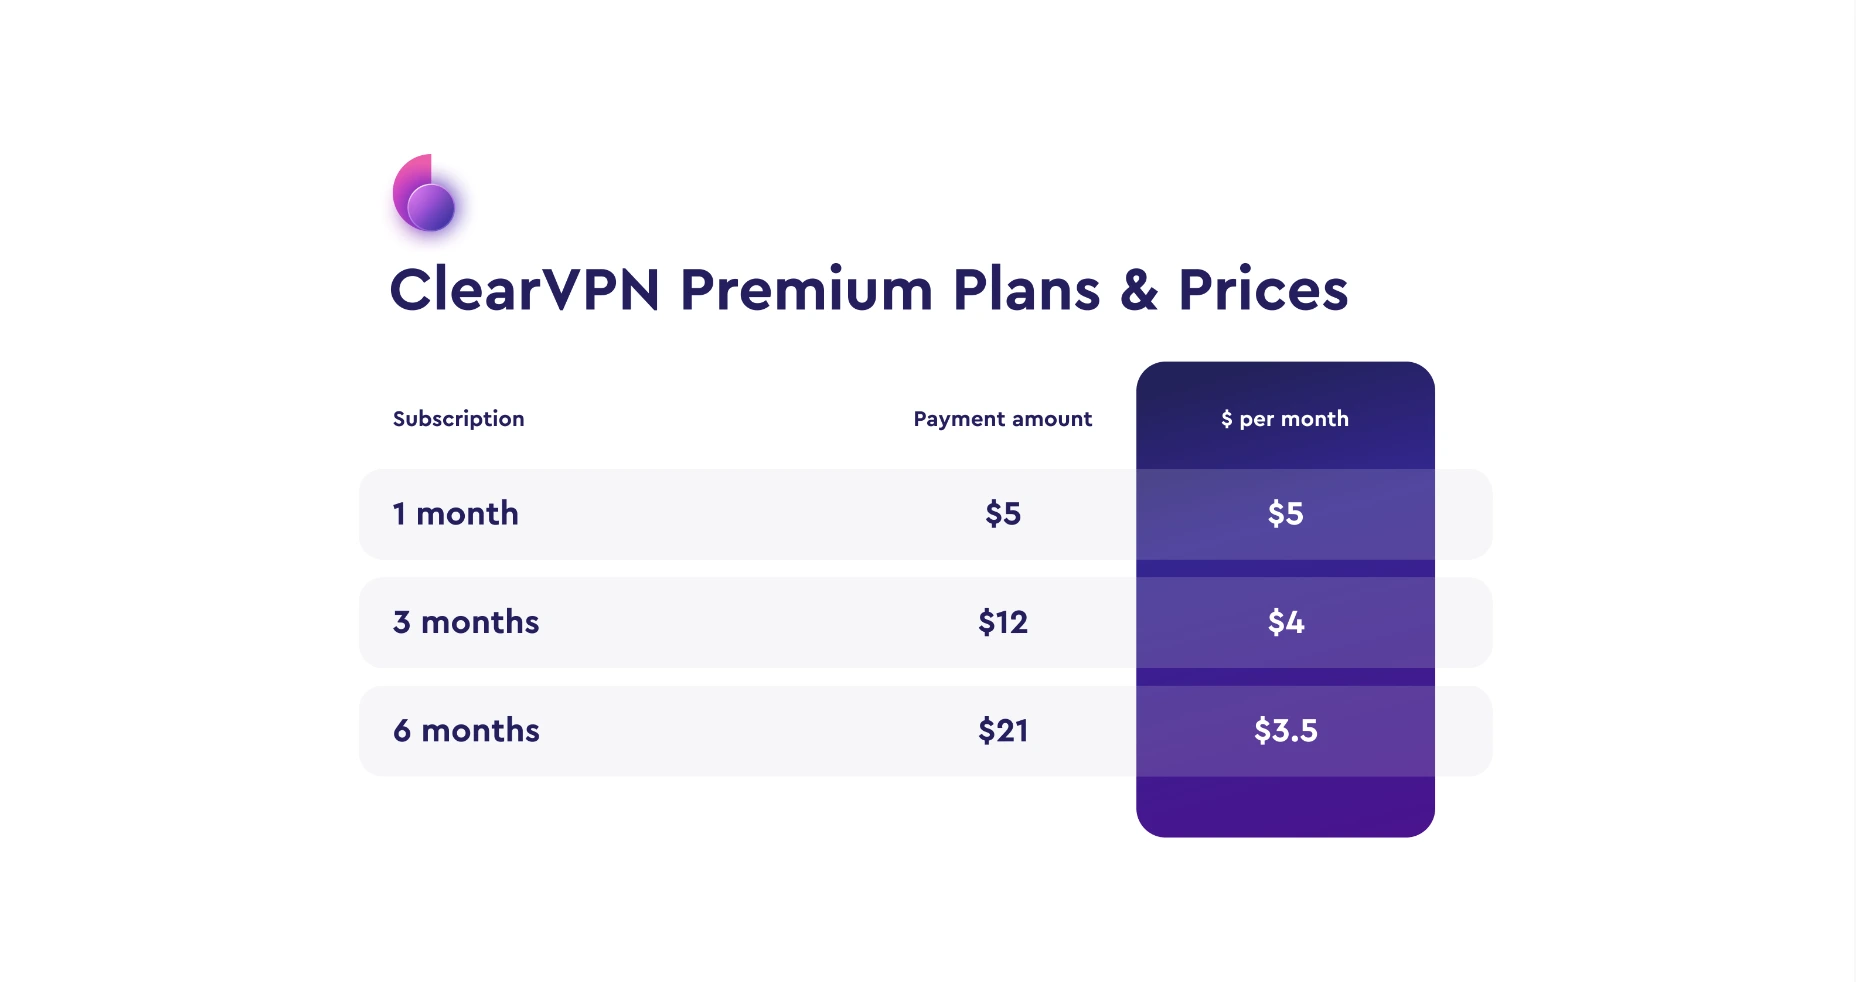 clearvpn premium pricing